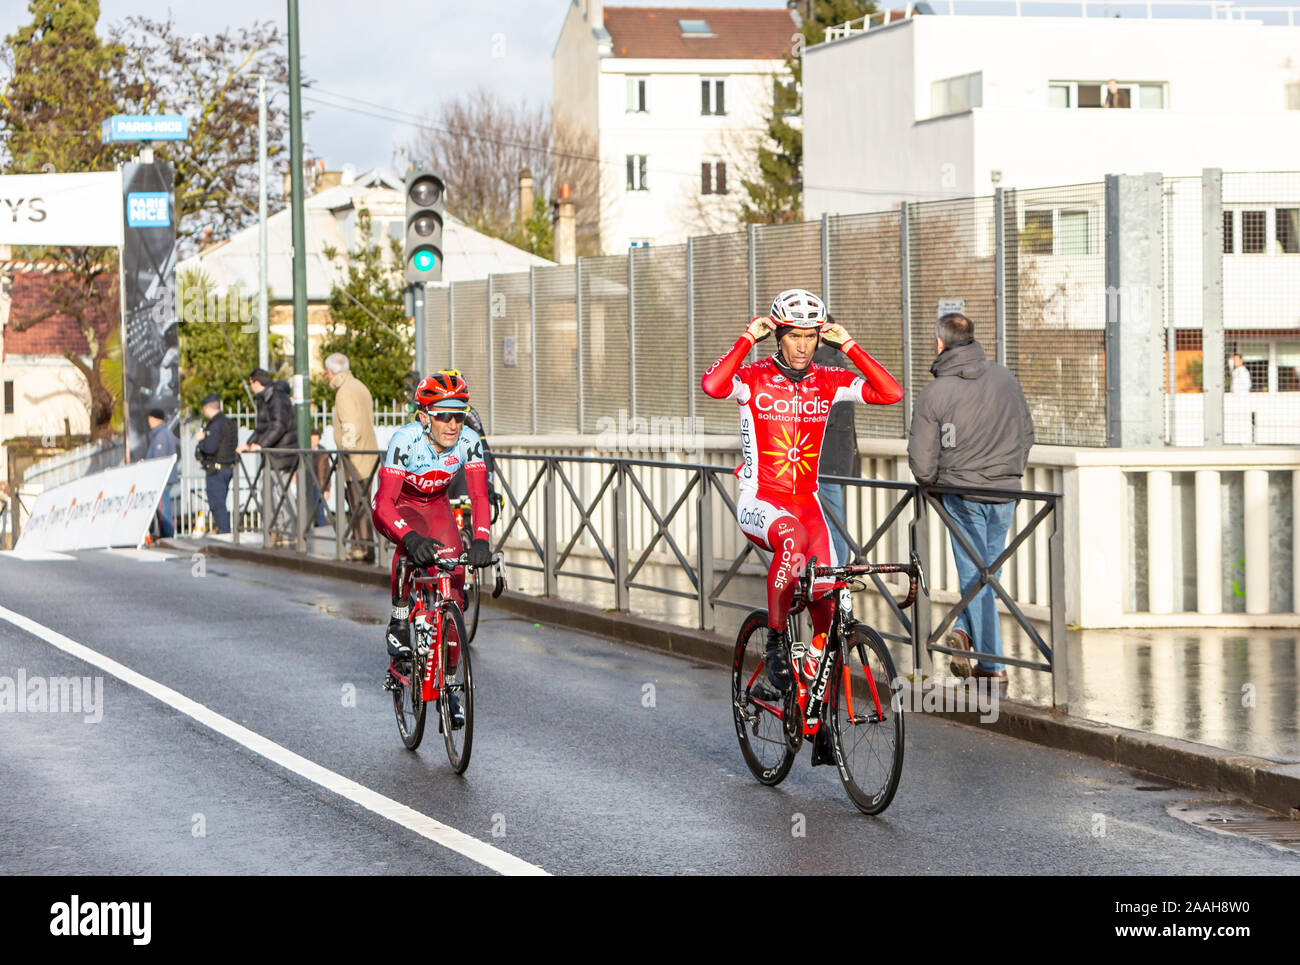 Meudon, Frankreich - 4. März 2018: Gruppe von drei Radfahrer reiten bei Paris-nizza 2018. Stockfoto